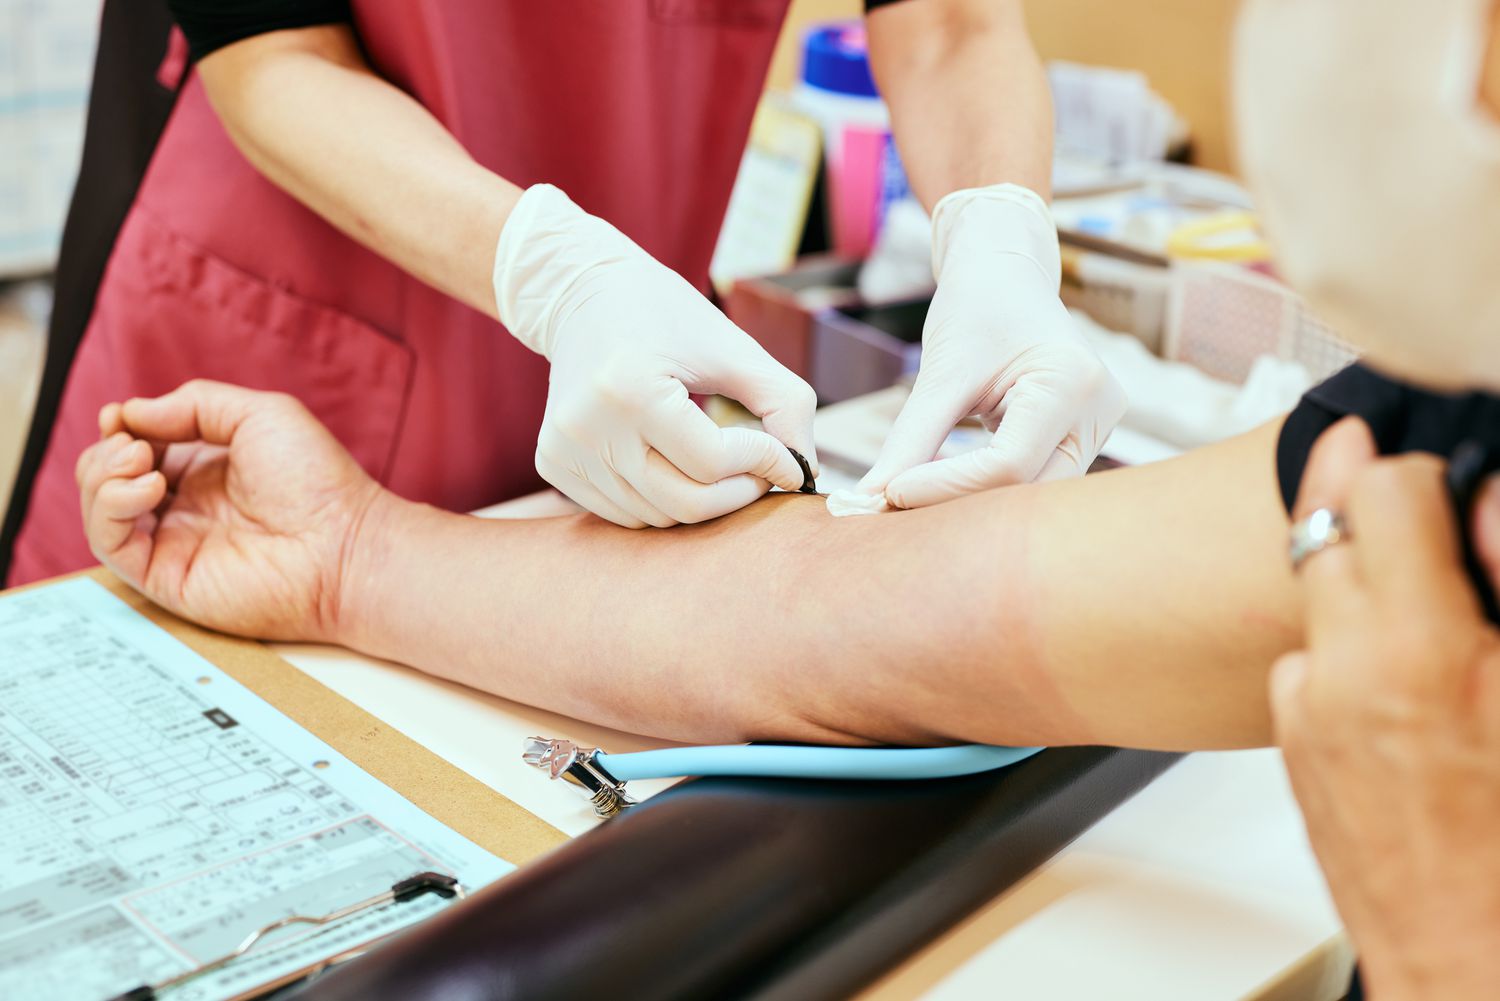 Cilat teste gjaku mund të diagnostikojnë kancerin e mitrës?